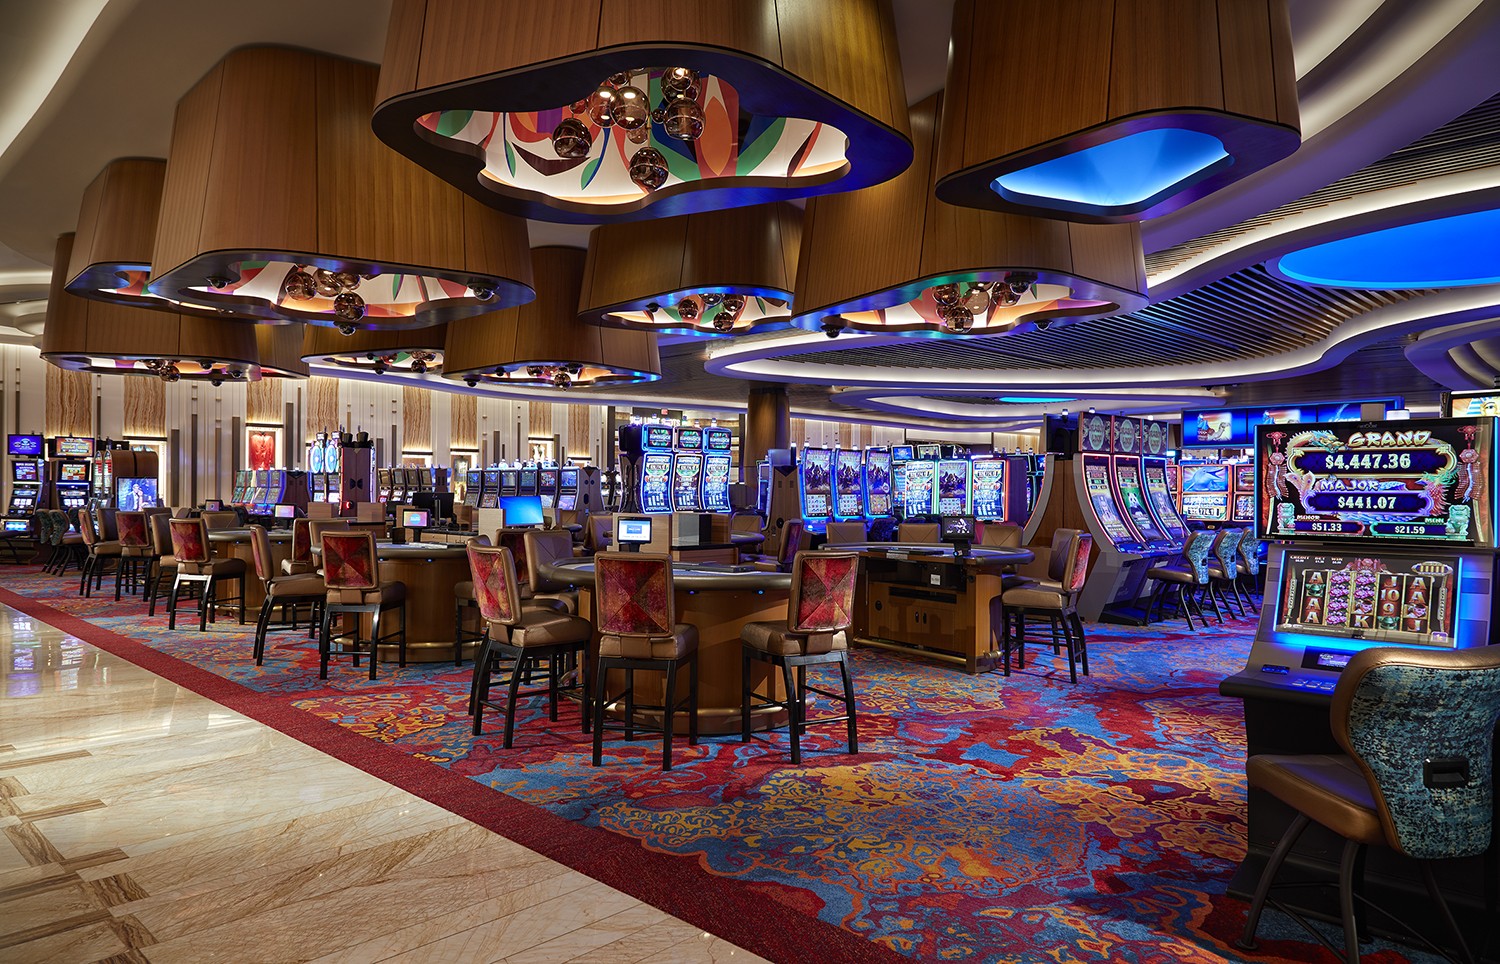 Legisladores de Florida aprueban acuerdo para agilizar la instalación de casinos en Miami